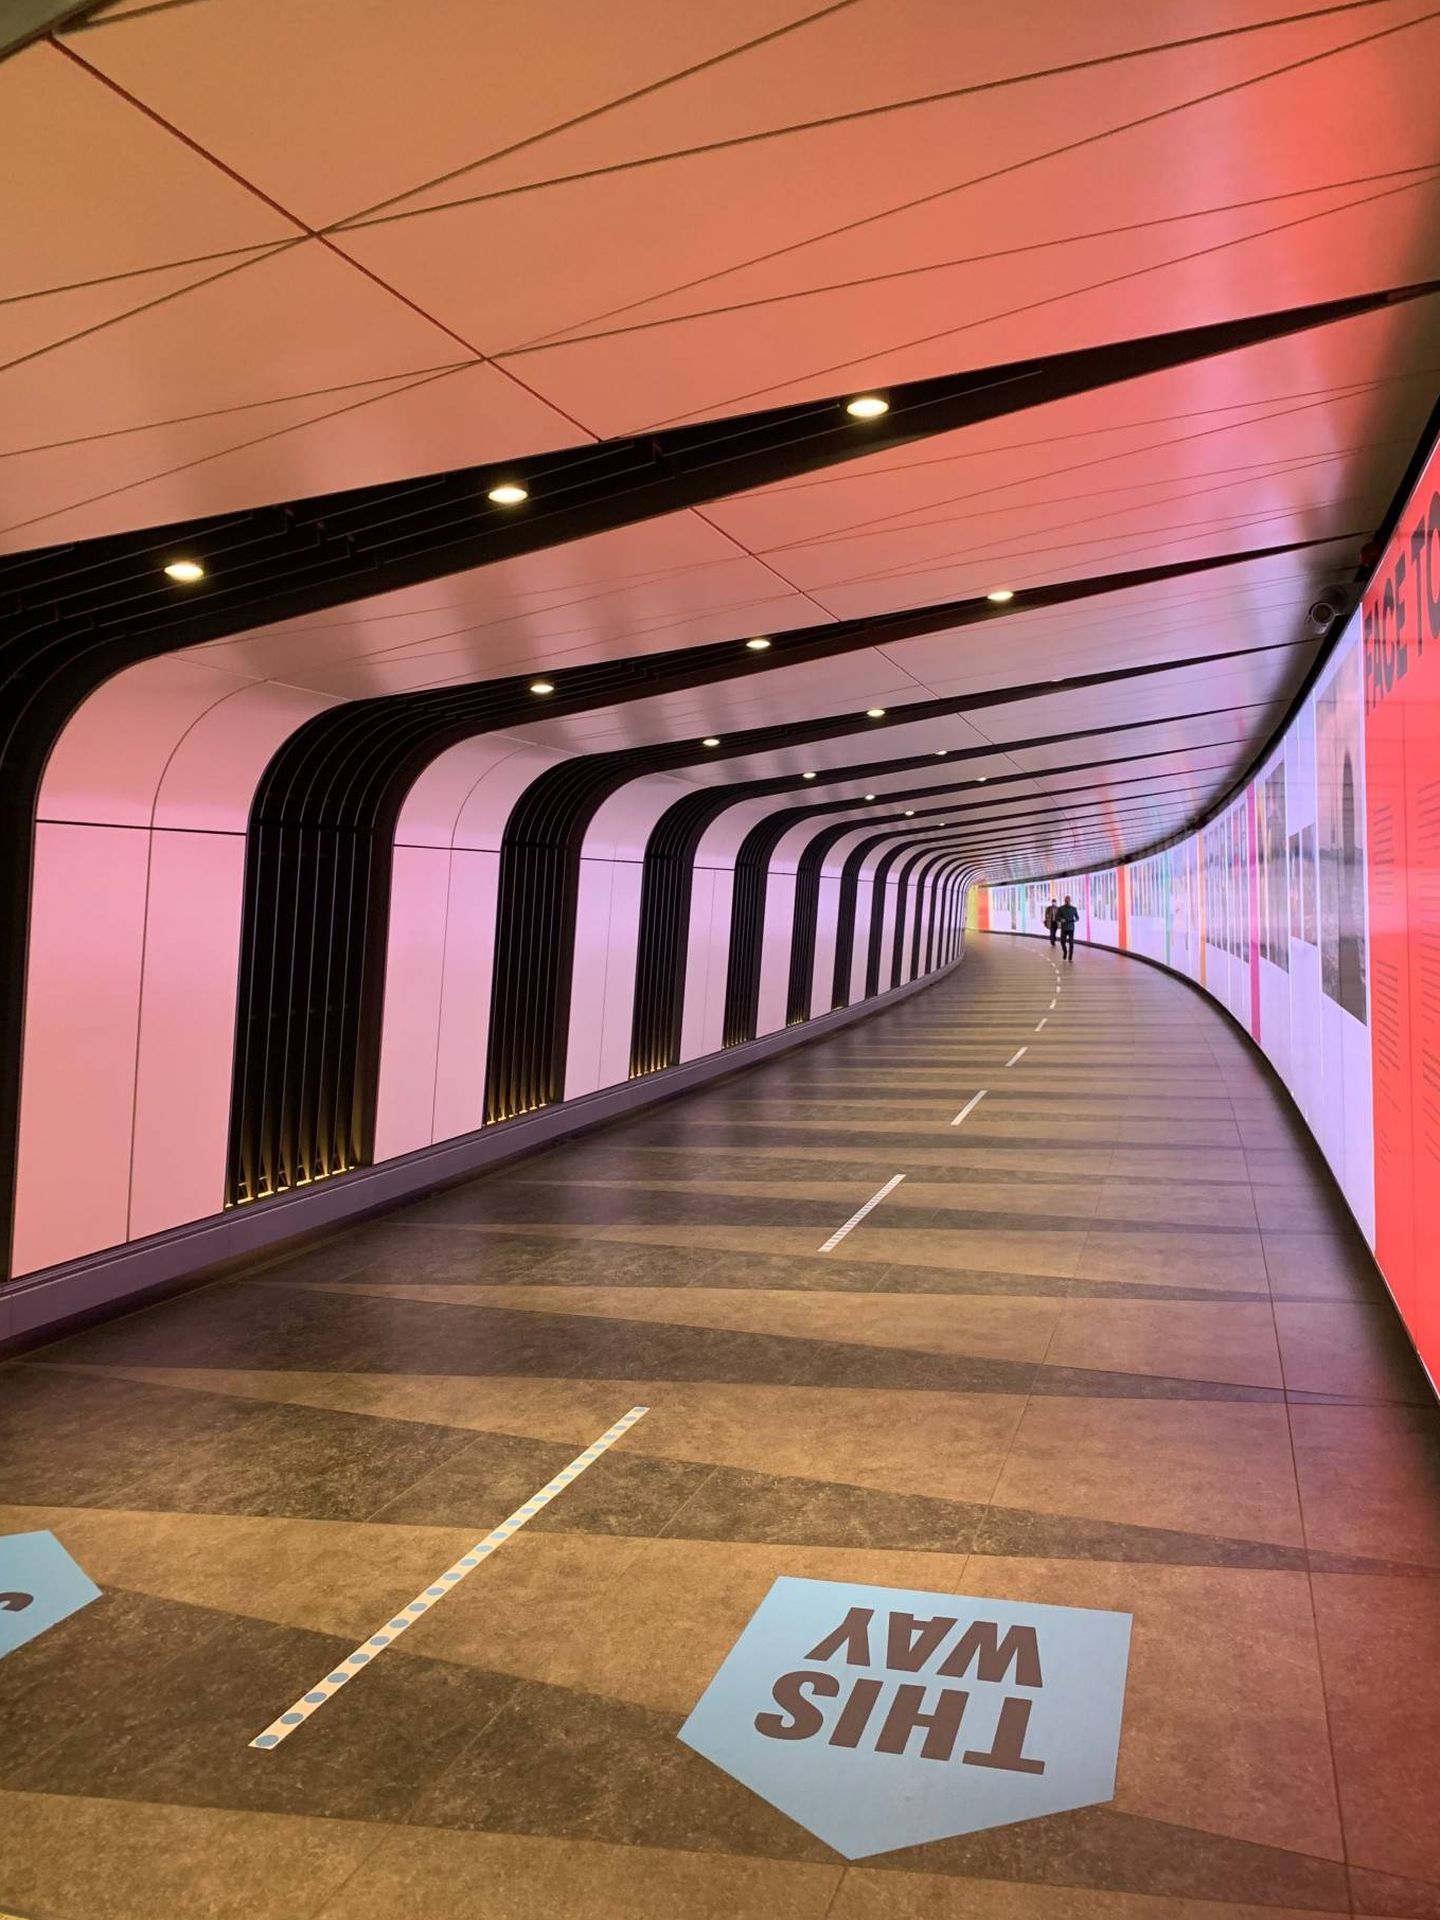 El largo pasadizo que une la salida del metro con las oficinas de Google es un camino imposible. Pero estos días lo complejo es toparse con algún transeúnte. (Foto: C. Maza)